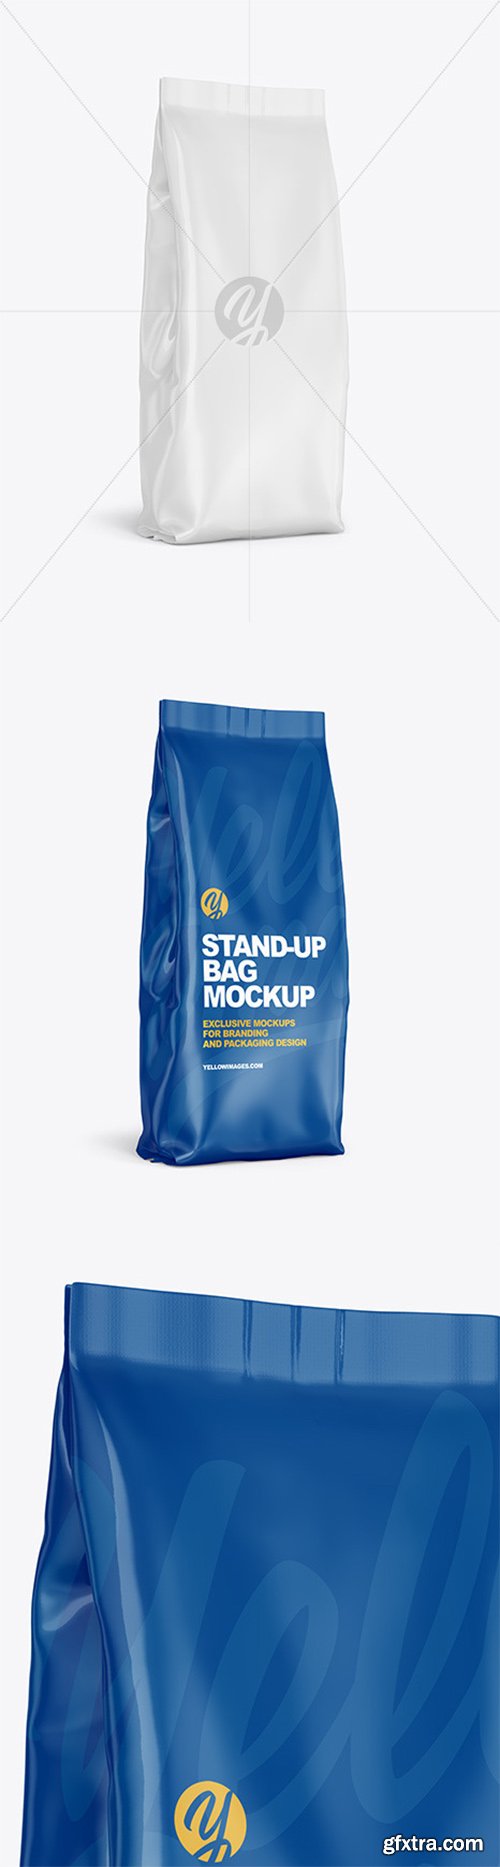 Glossy Stand-up Bag Mockup 61557